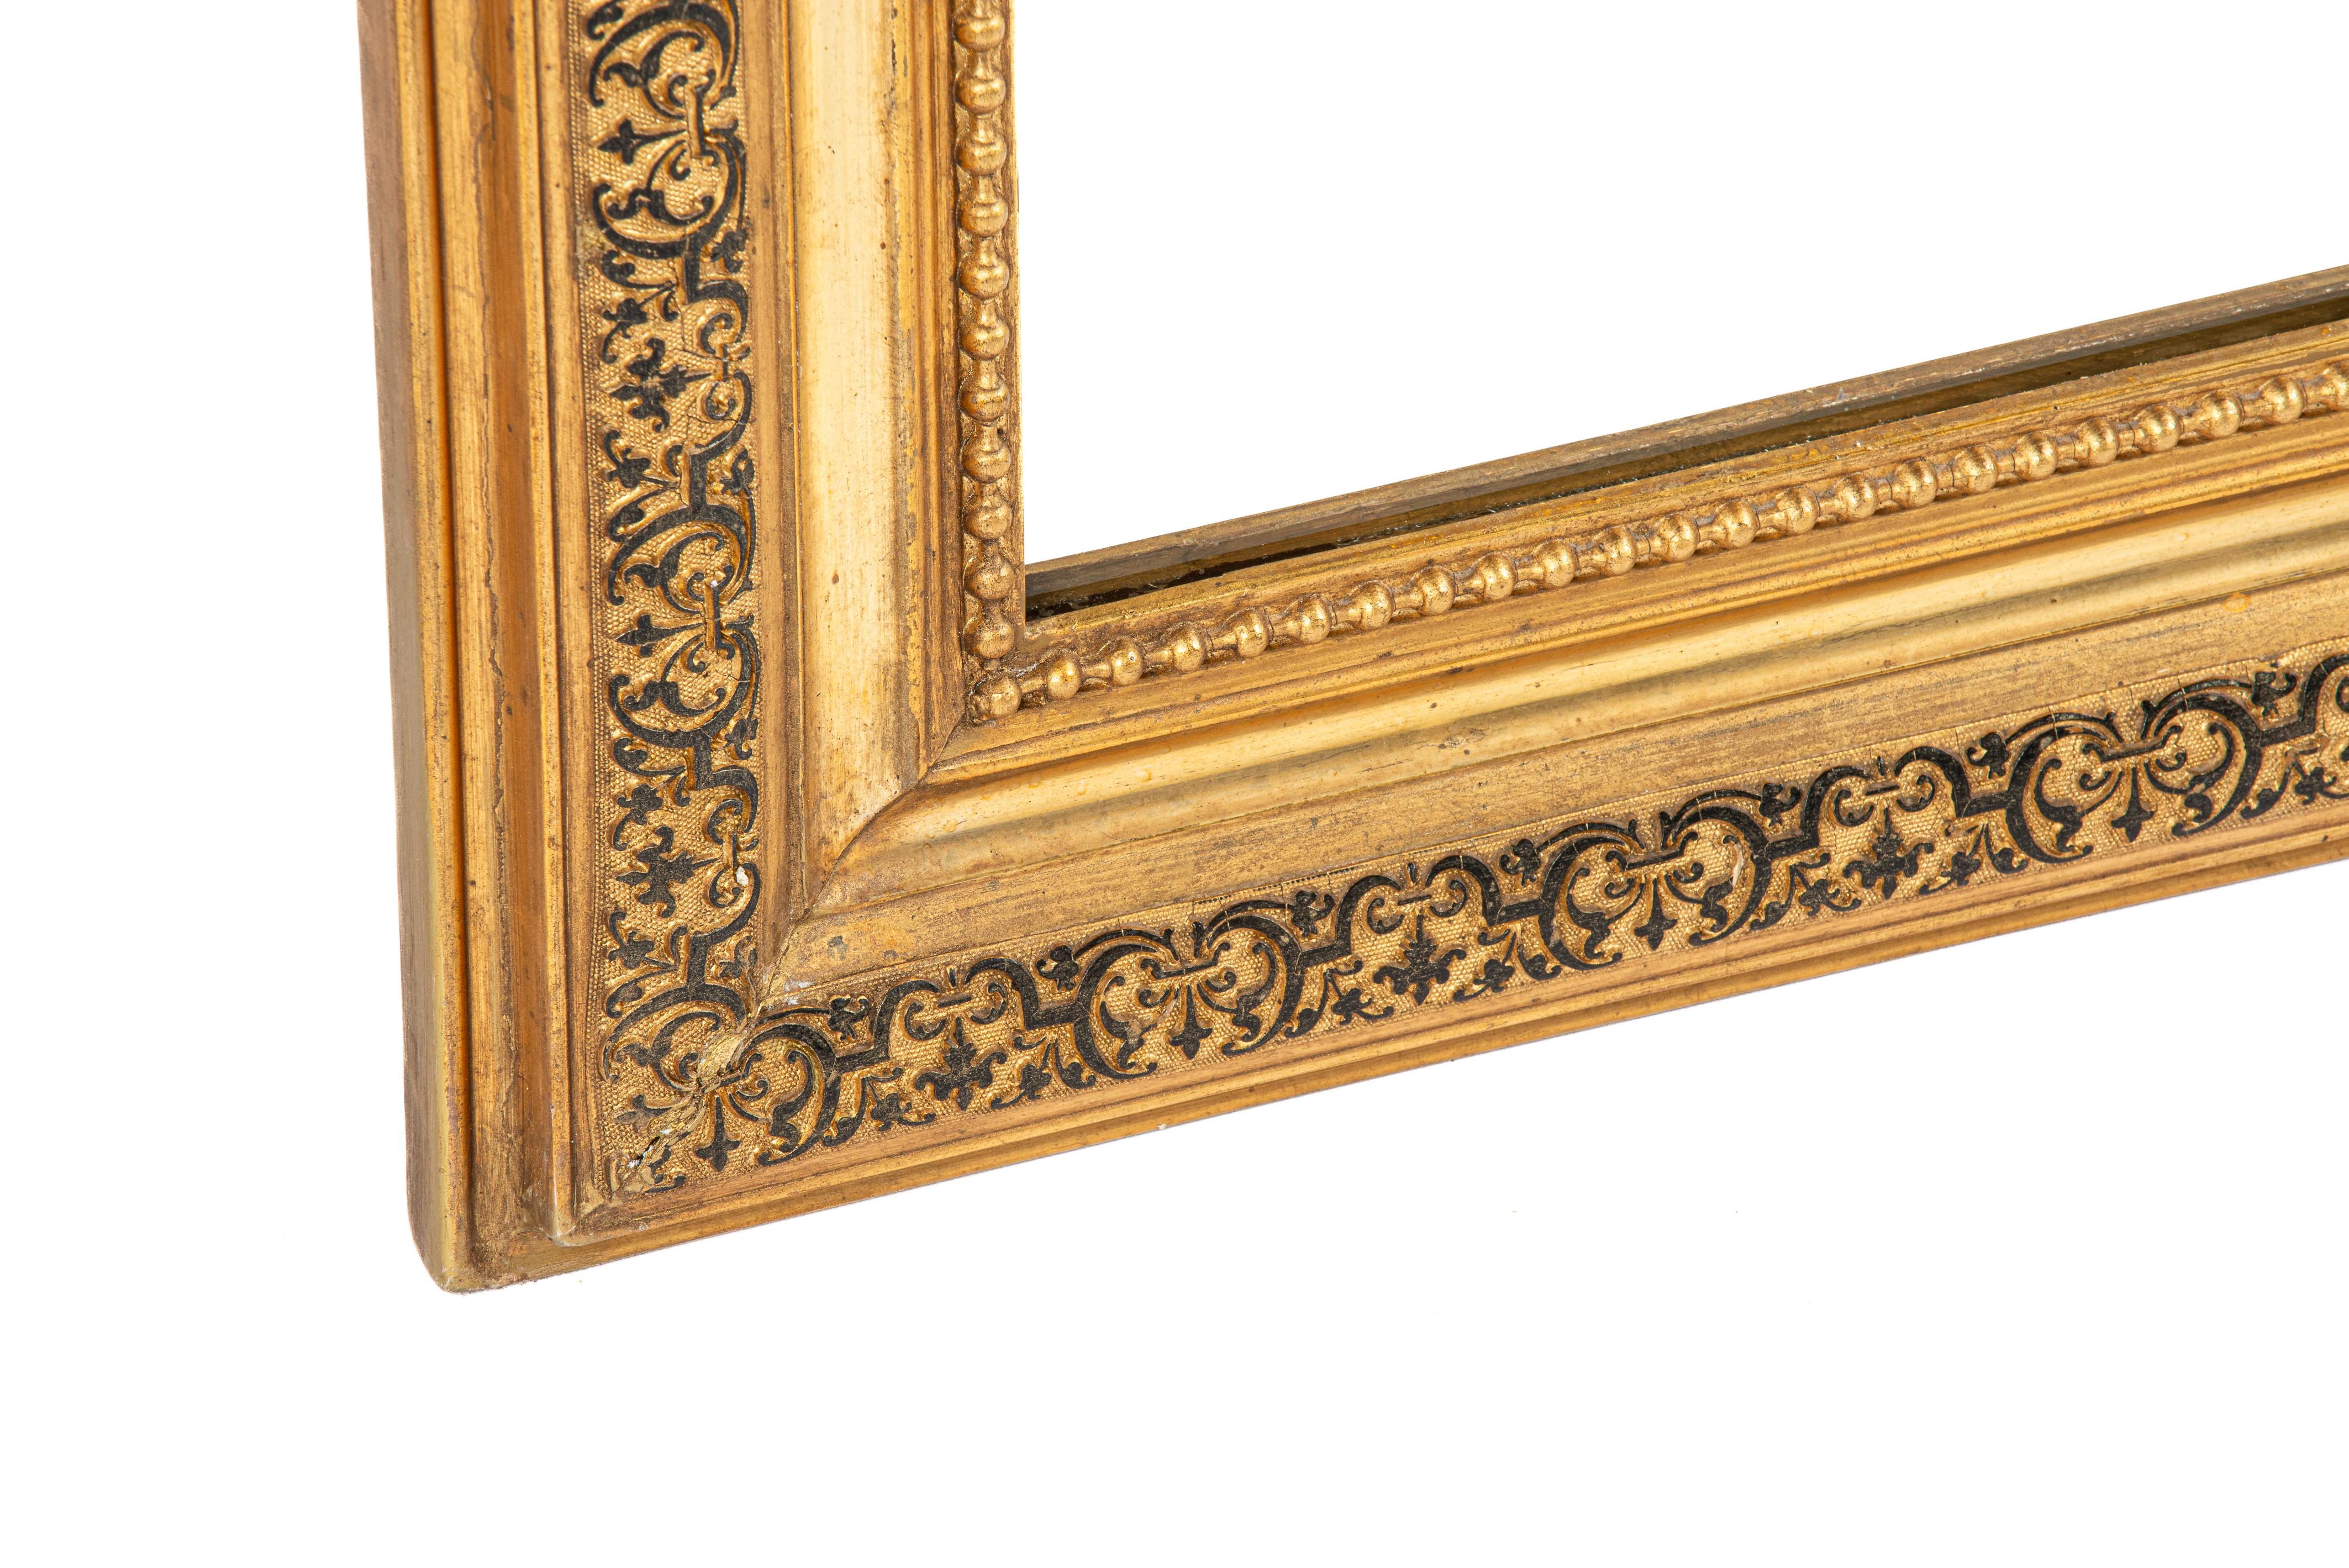 Hier wird ein exquisiter antiker Louis-Philippe-Spiegel präsentiert, der mit französischer Handwerkskunst und Eleganz des 19. Jahrhunderts verziert ist. Dieser aus Südfrankreich stammende Spiegel aus der Zeit um 1880 weist die typischen Merkmale des